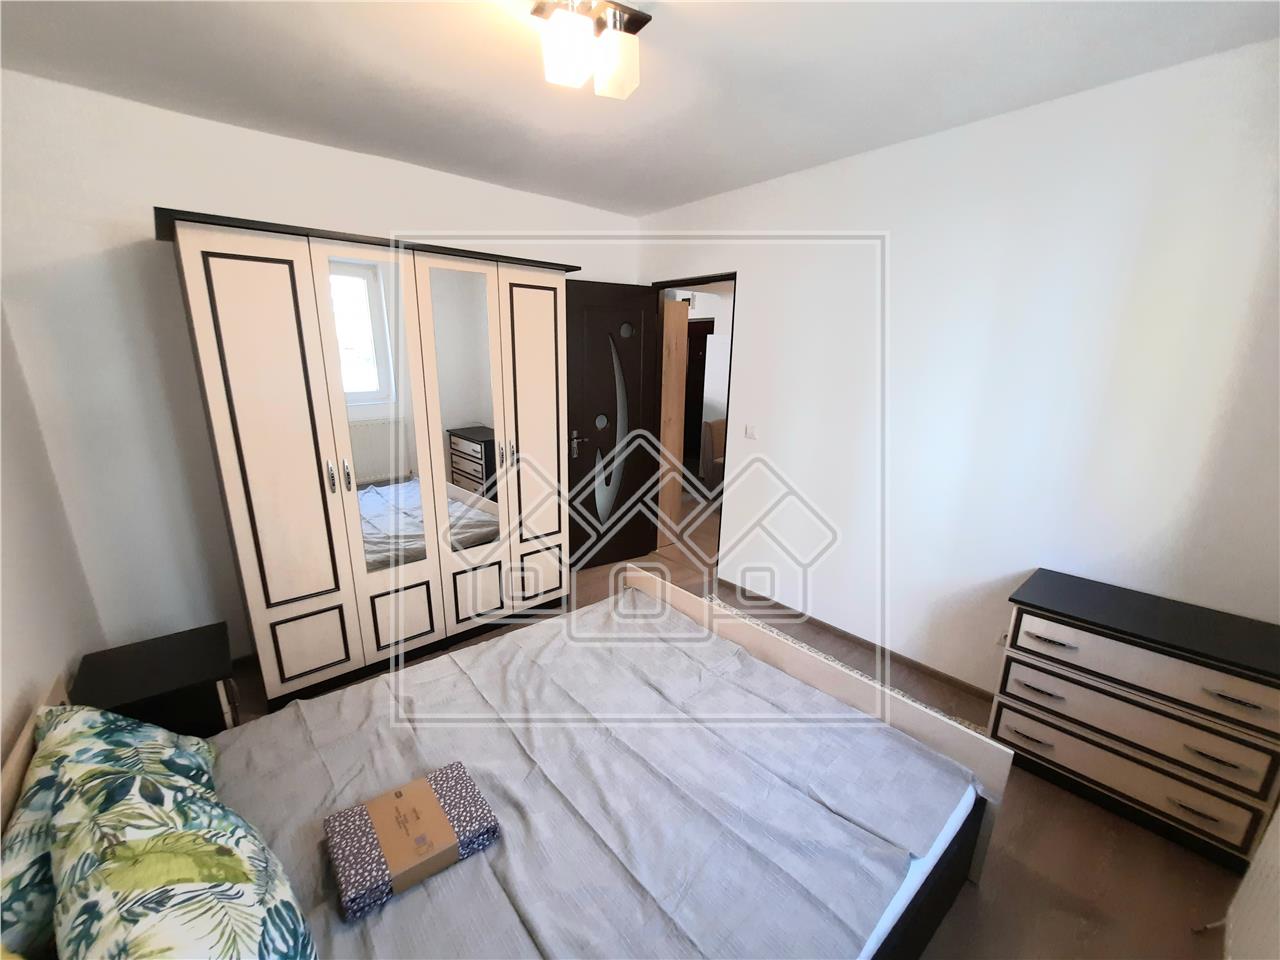 Wohnung zur Miete in Alba Iulia - 2 Zimmer - 35 qm - Cetate-Bereich